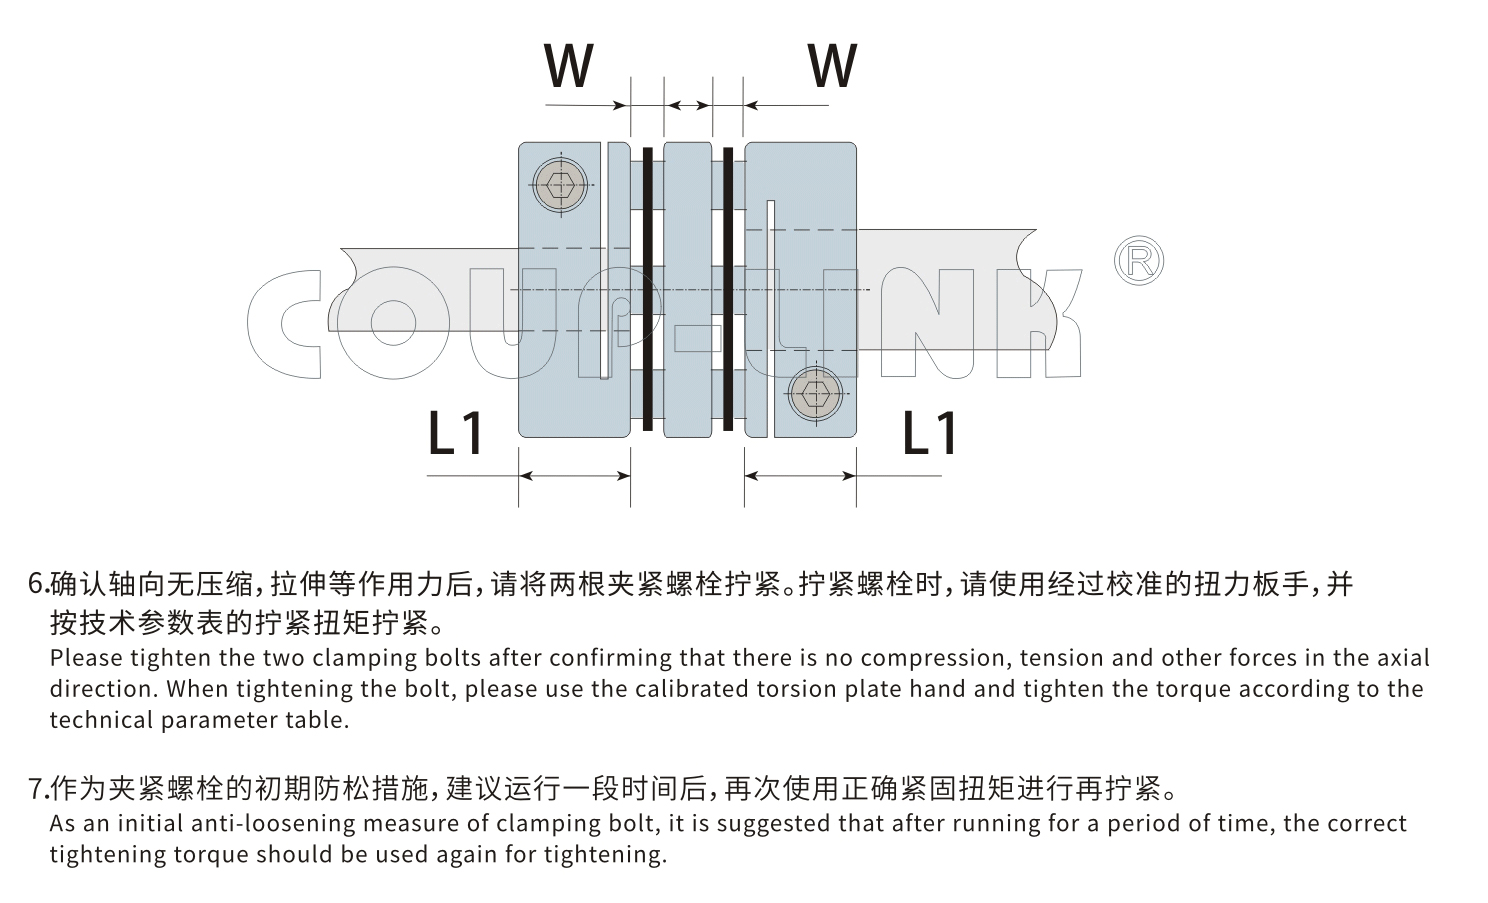 LK5系列 多節夾緊螺絲固定式（膜片聯軸器）_聯軸器種類-廣州菱科自動化設備有限公司